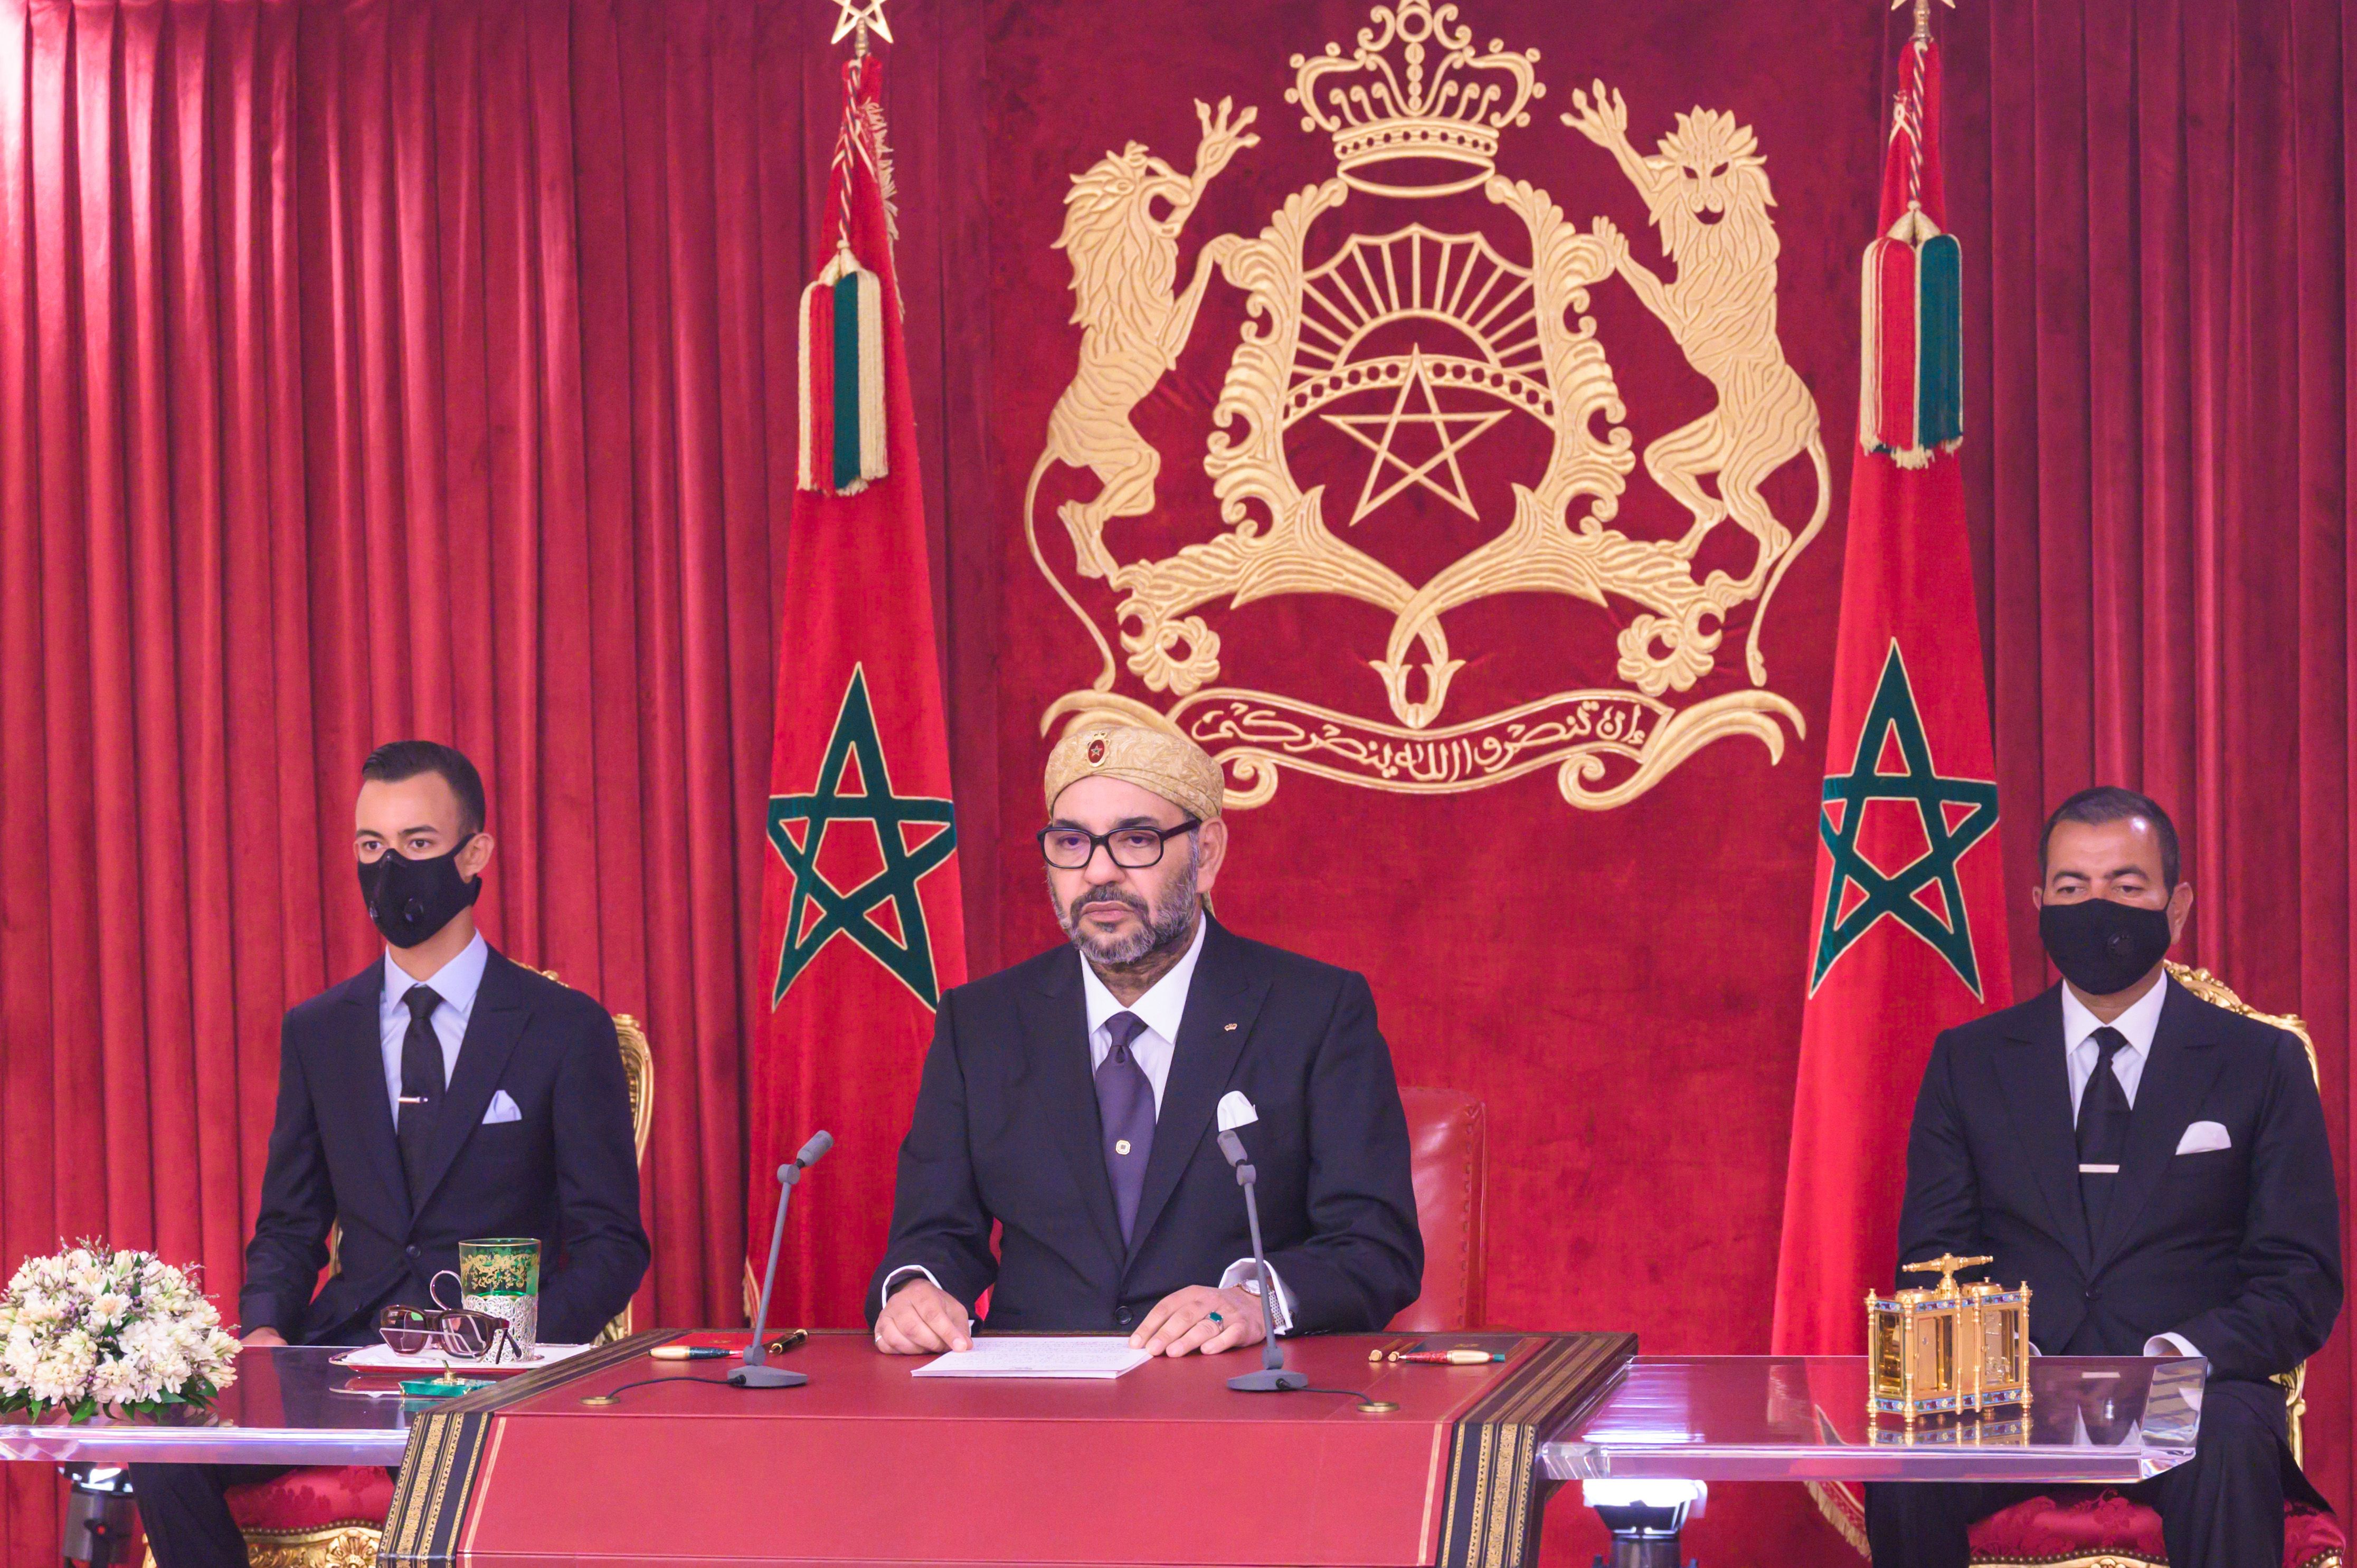 الخطب الملكية المملكة المغربية وزارة الشؤون الخارجية و التعاون الإفريقي و المغاربة المقيمين بالخارج